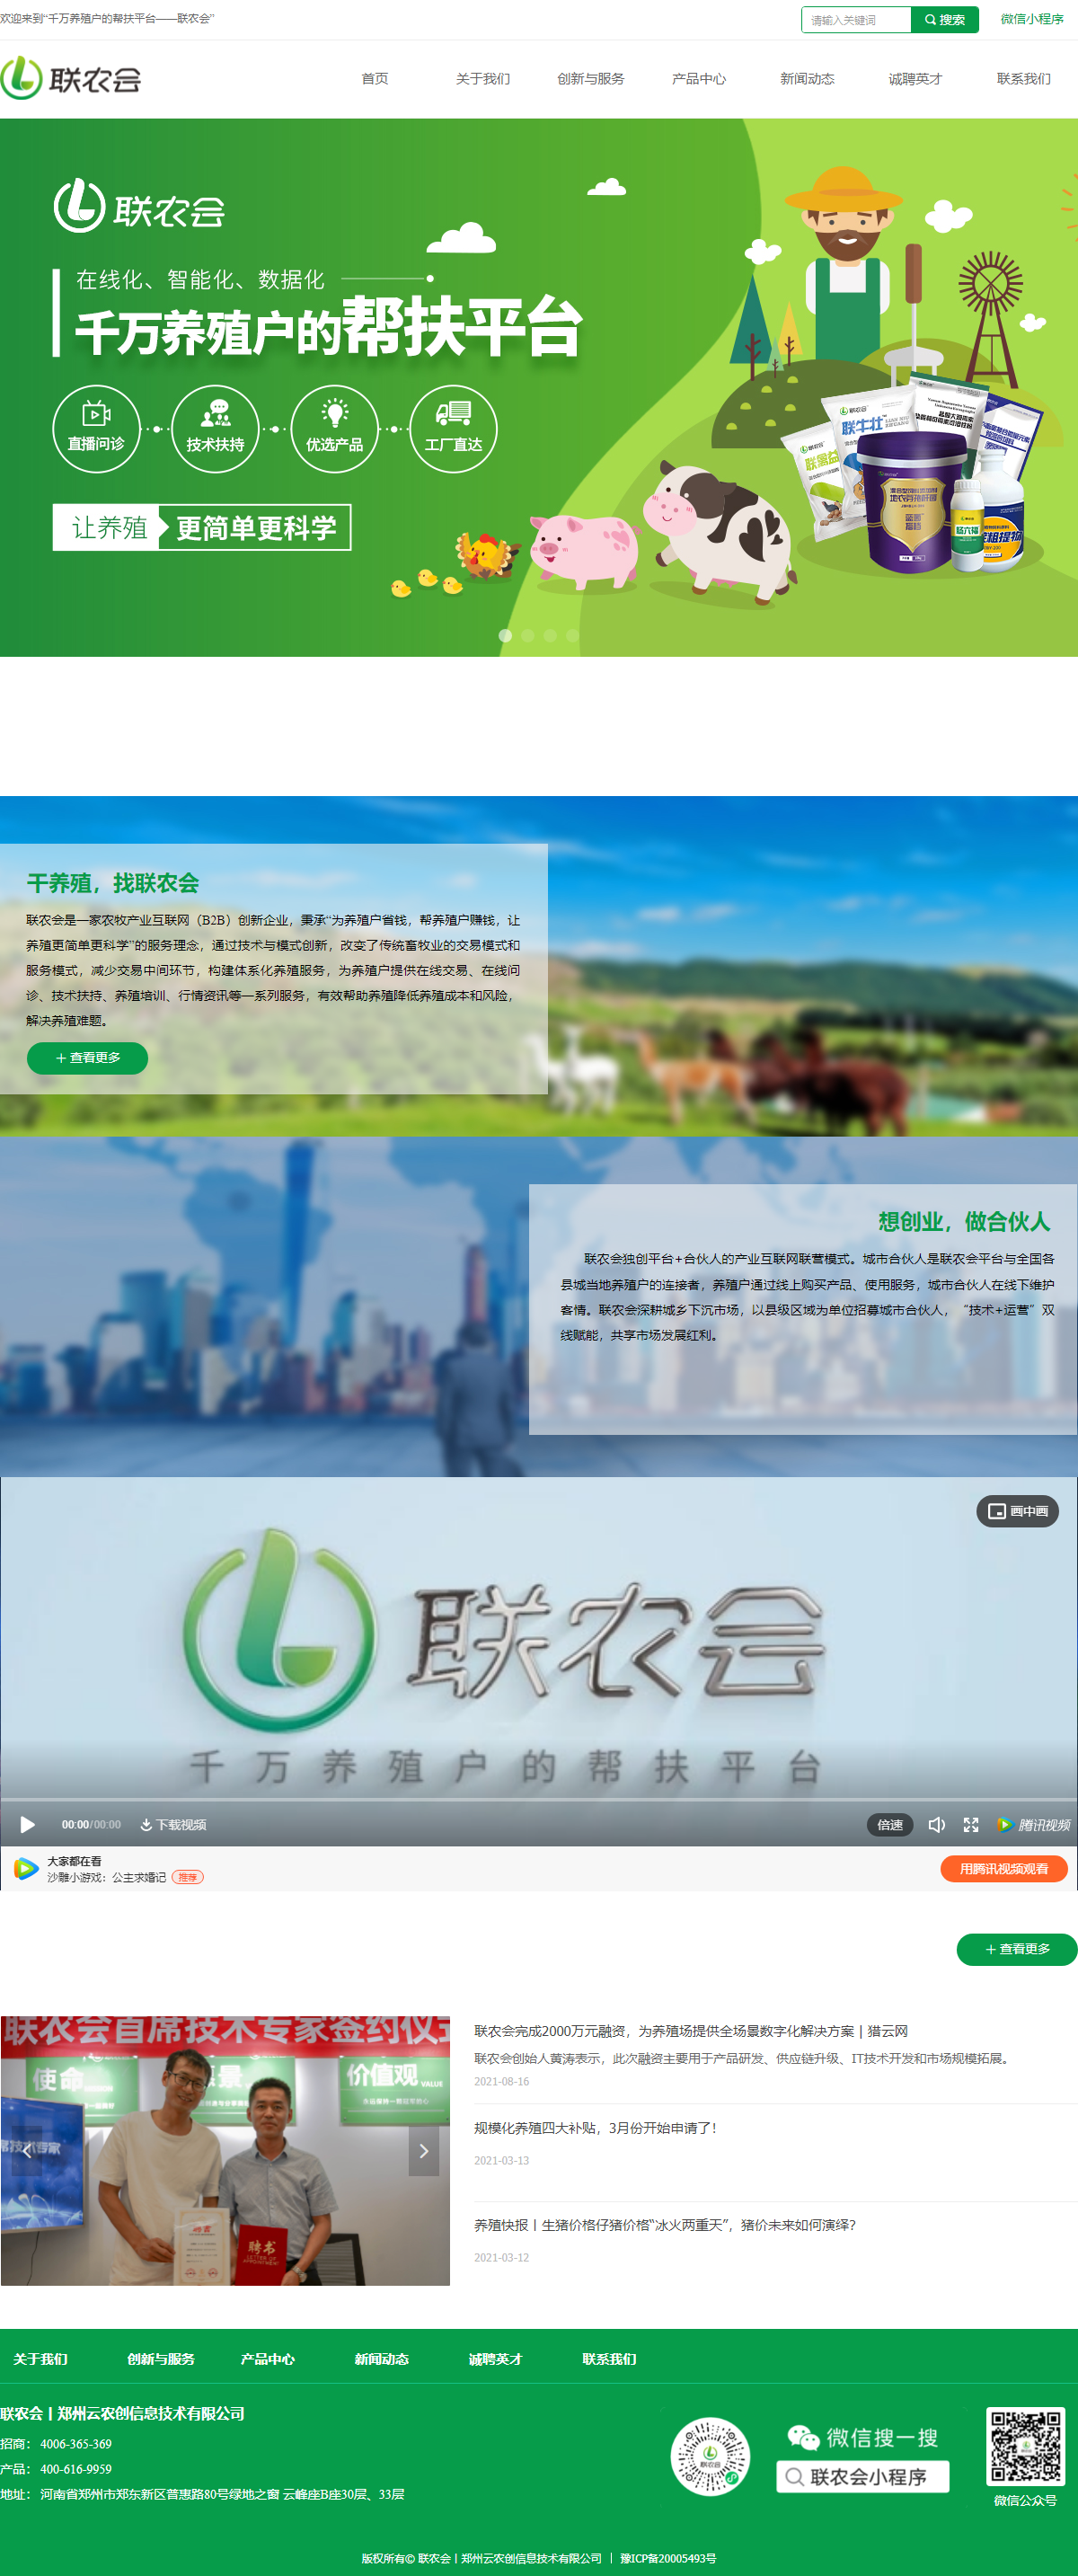 郑州云农创信息技术有限公司网站案例